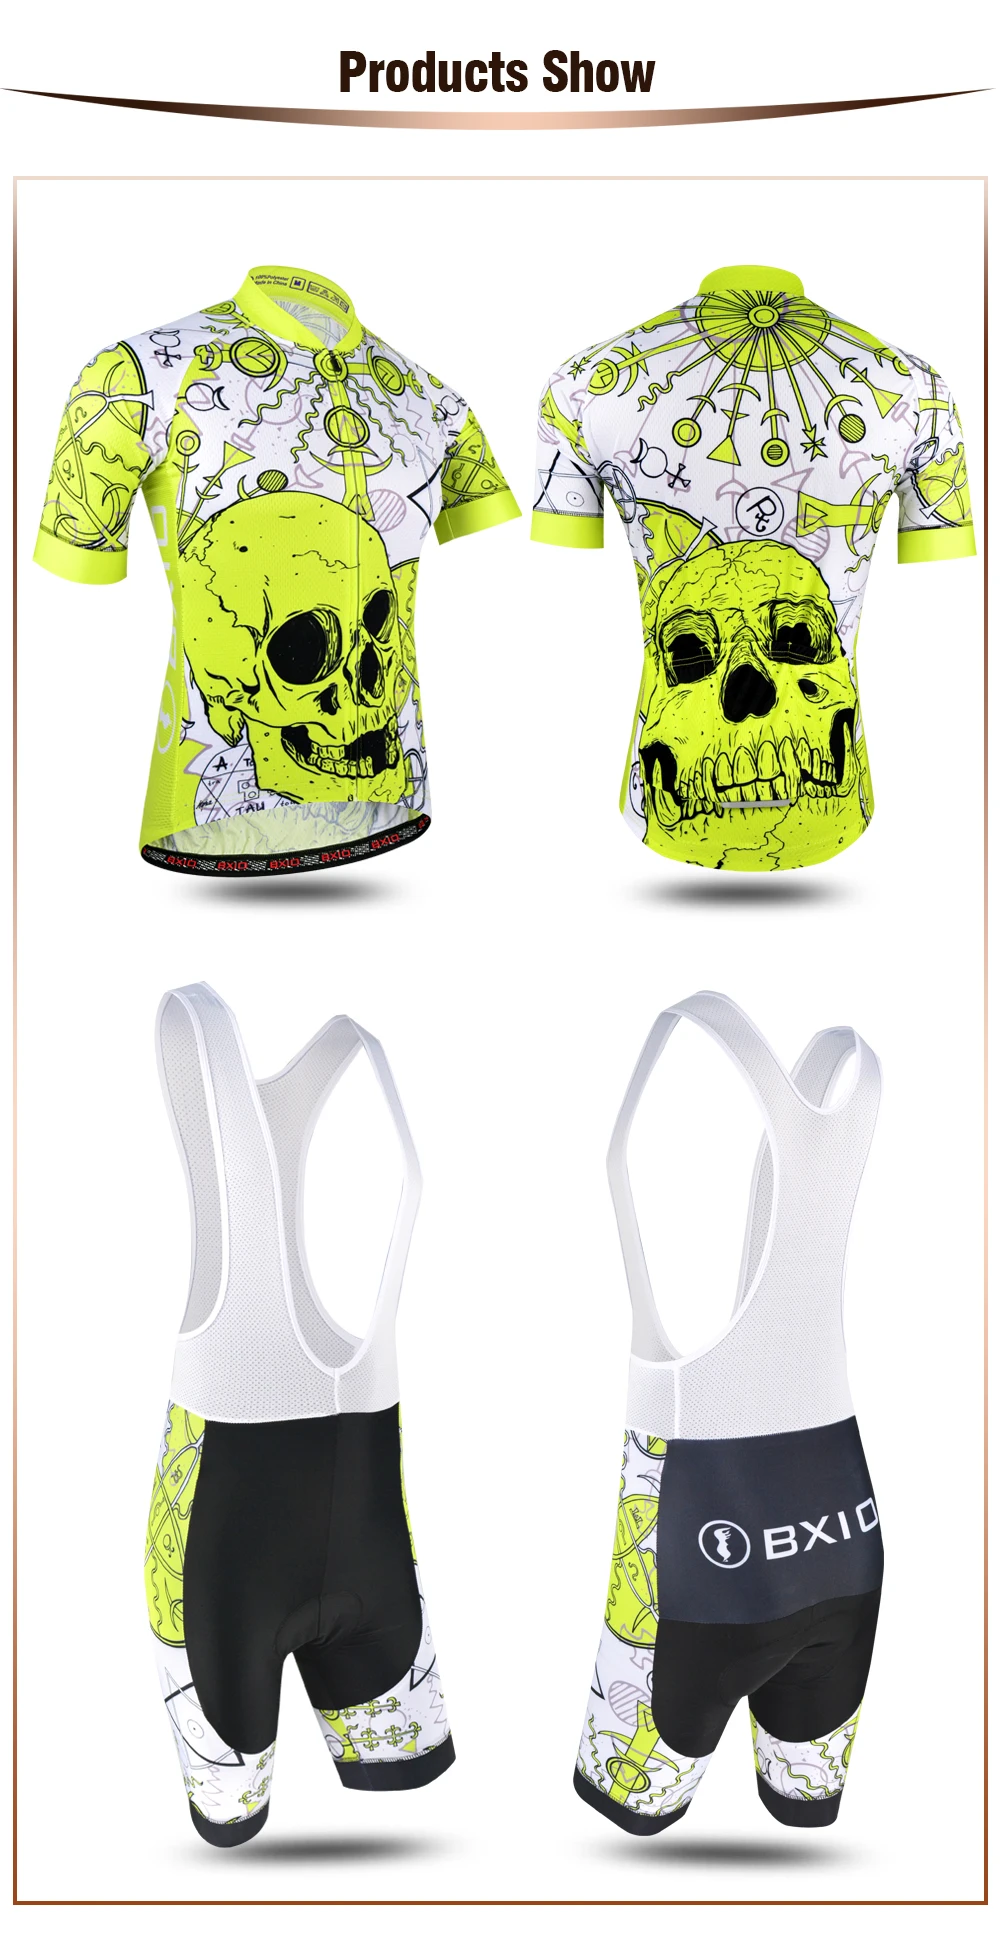 BXIO Pro Team Skull велосипедная одежда лайкра короткий рукав манжеты Roupa Ciclismo качественные кастомные гелевые прокладки велосипедная одежда BX-186